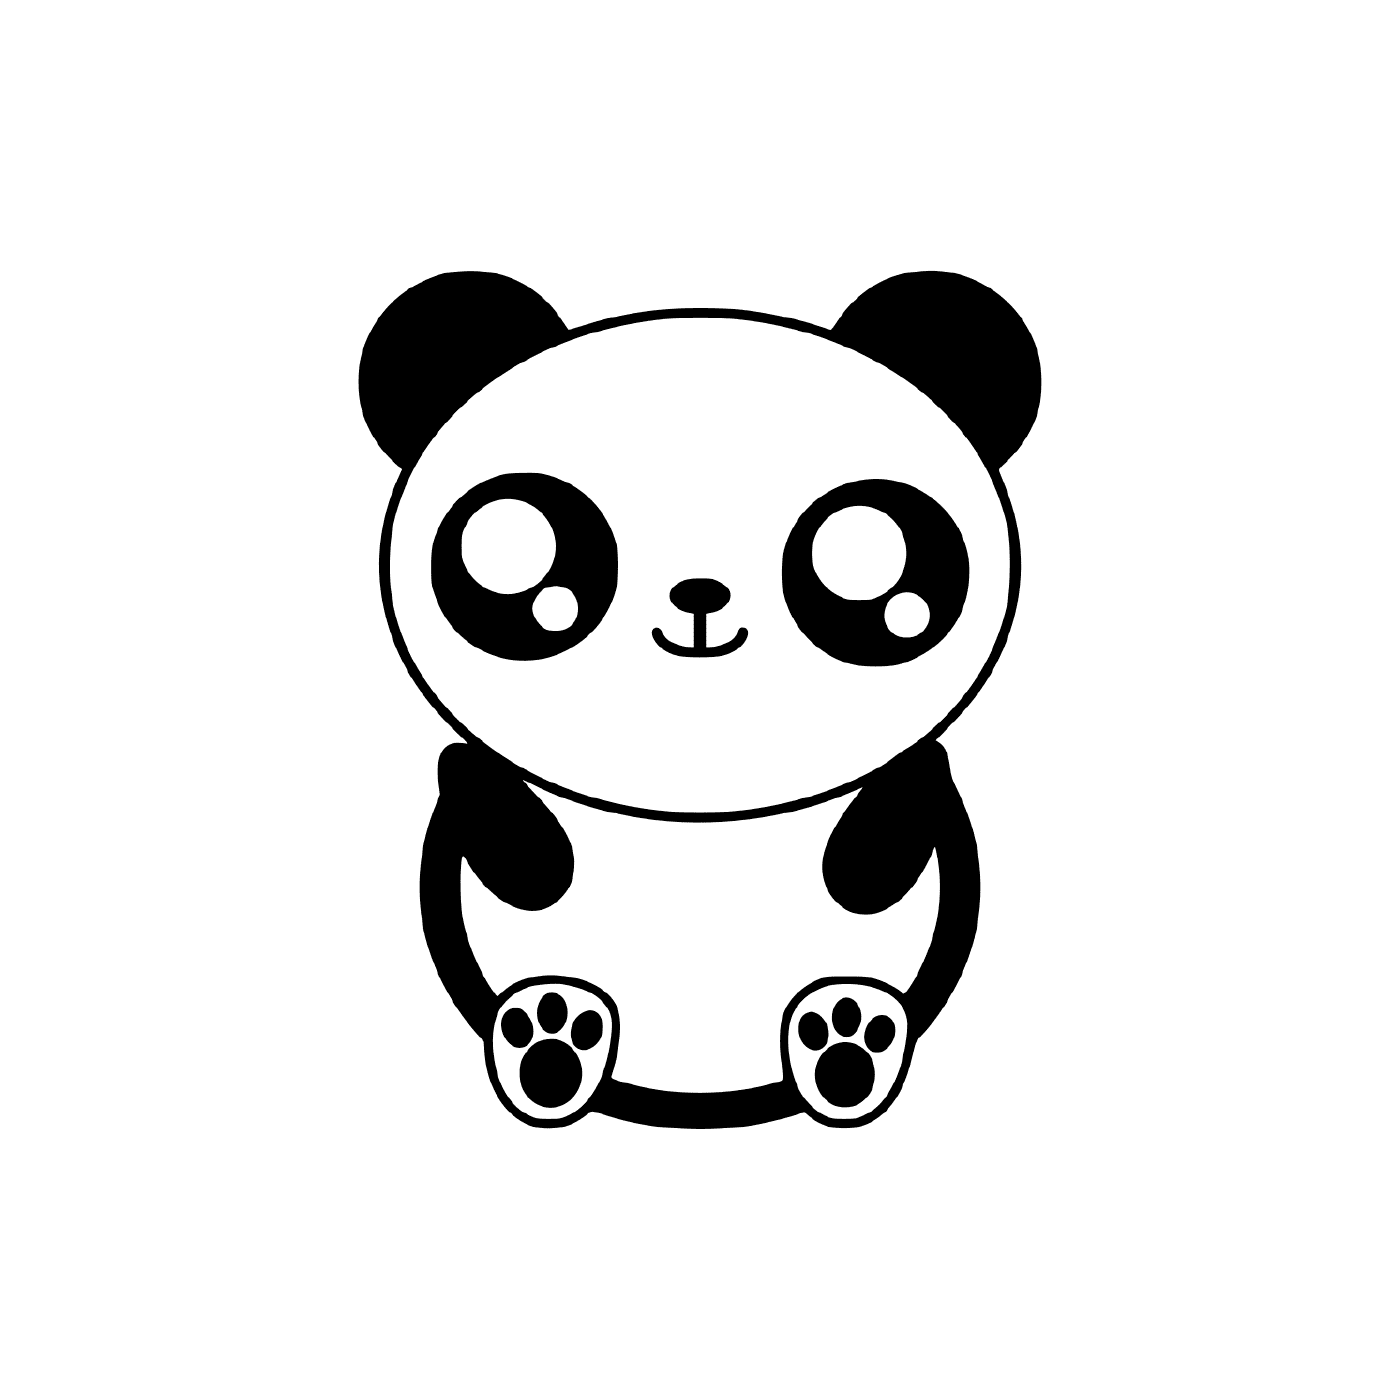  A cute panda 